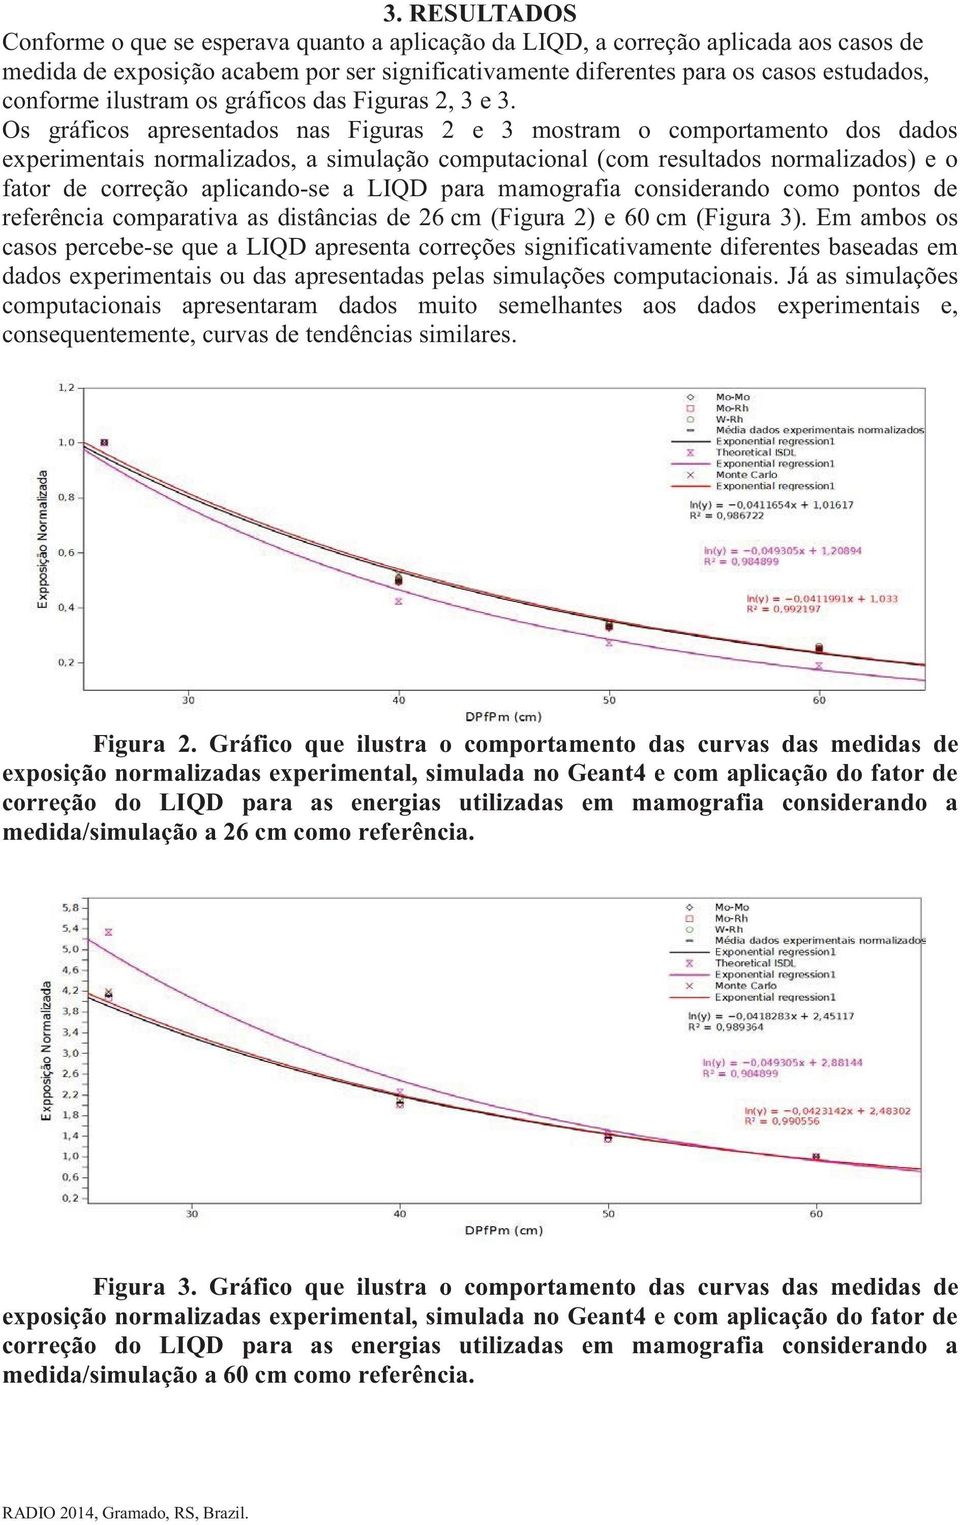 Os gráficos apresentados nas Figuras 2 e 3 mostram o comportamento dos dados experimentais normalizados, a simulação computacional (com resultados normalizados) e o fator de correção aplicando-se a